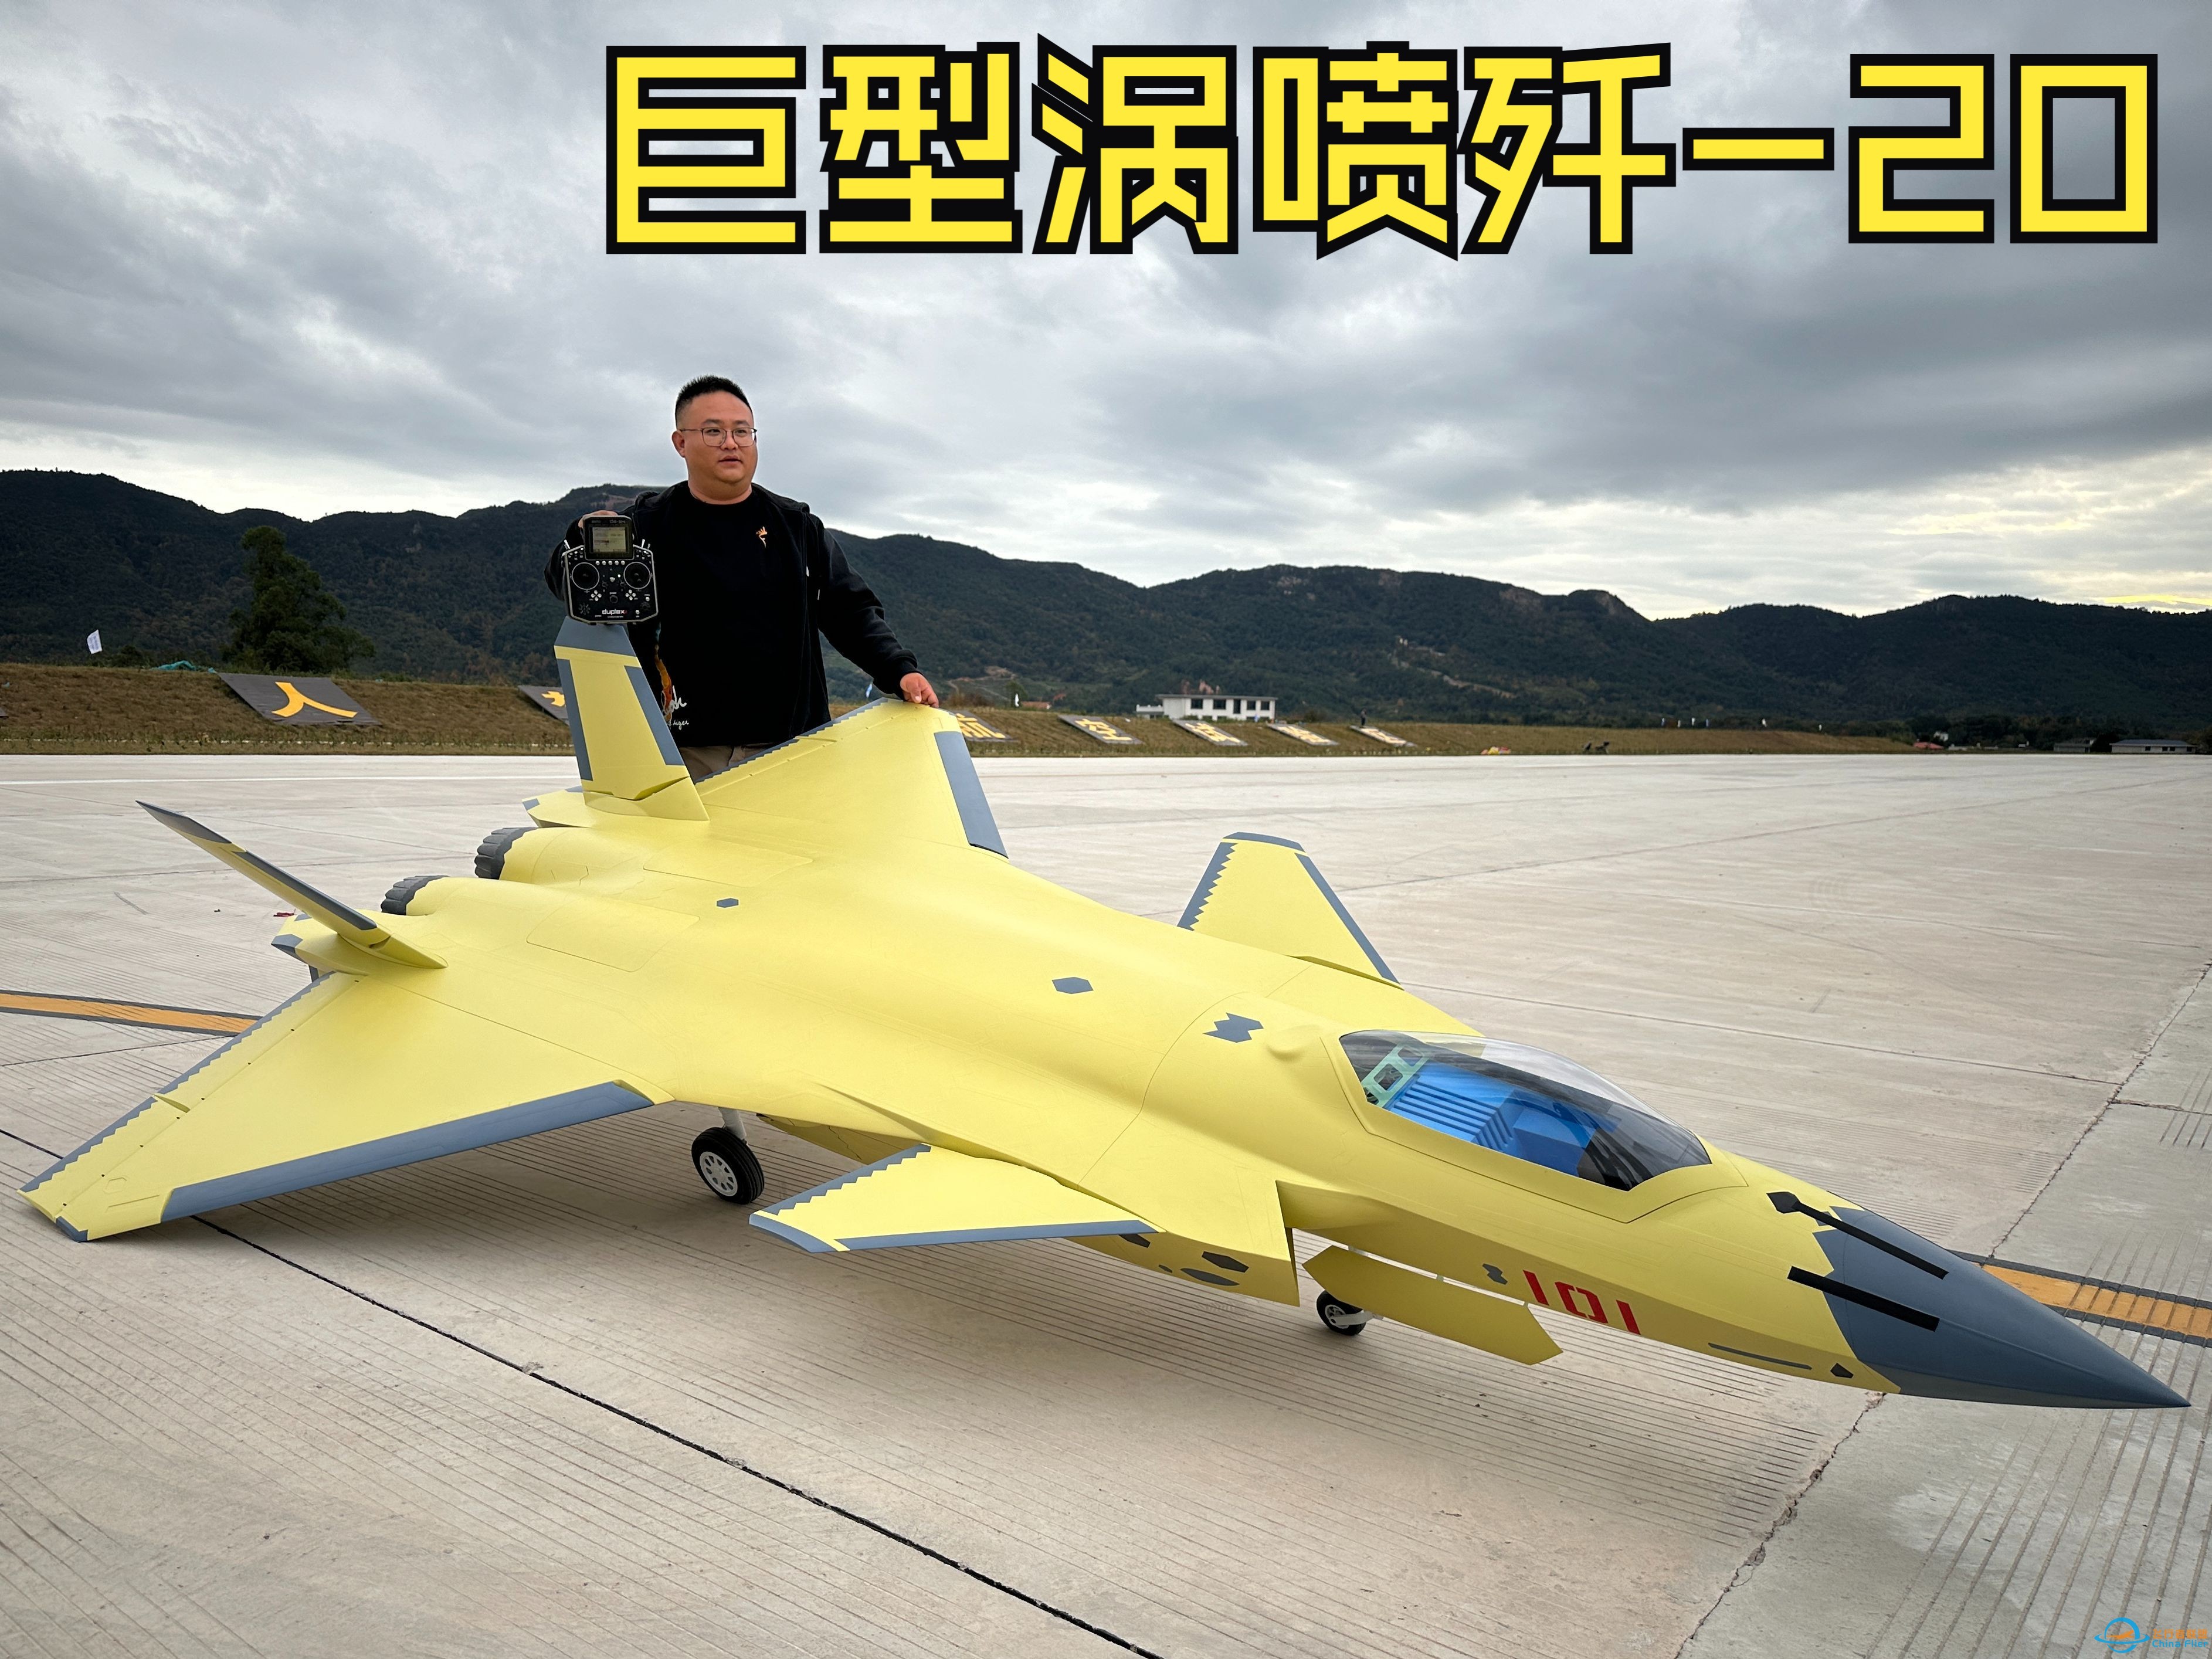 国内首台大型像真歼-20涡喷航模在赣州机场成功首飞-1.jpg